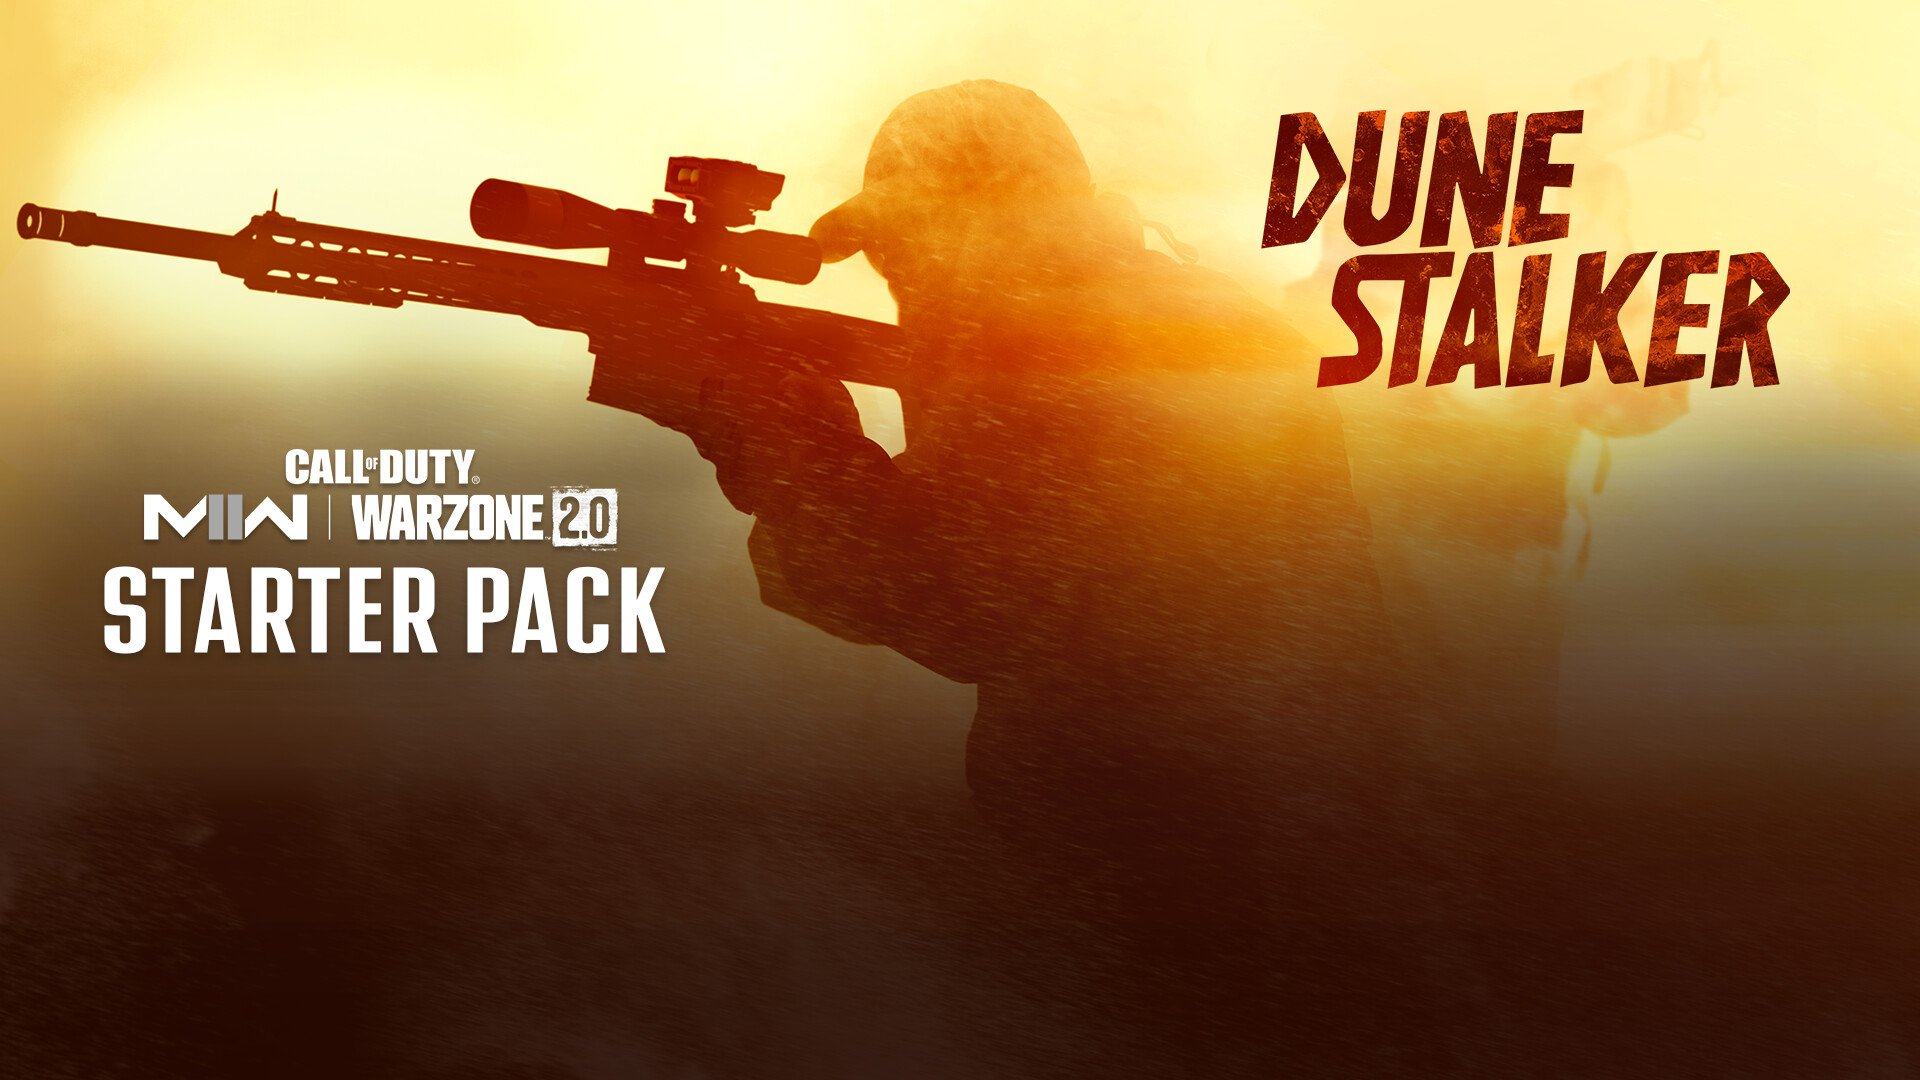 Call of Duty: Modern Warfare II - Dune Stalker: Starter Pack DLC Steam Altergift 13.93$